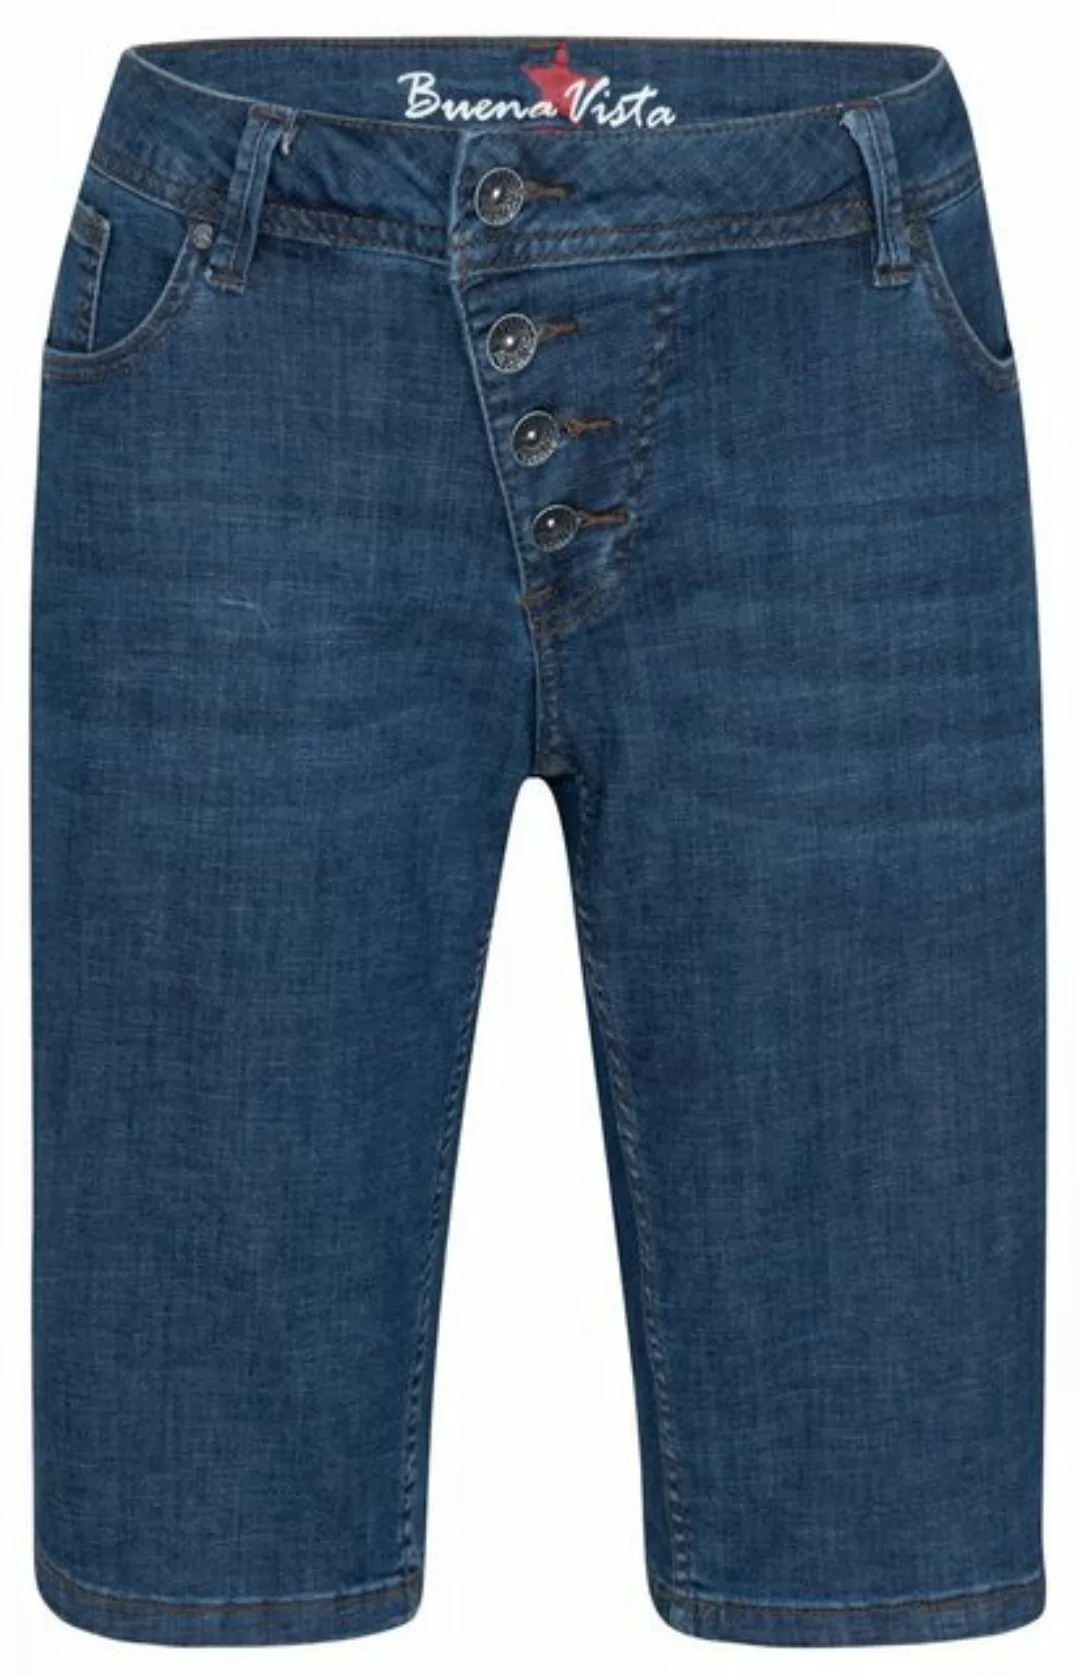 Buena Vista Stretch-Jeans BUENA VISTA MALIBU SHORT dark stone 2304 B5025 34 günstig online kaufen